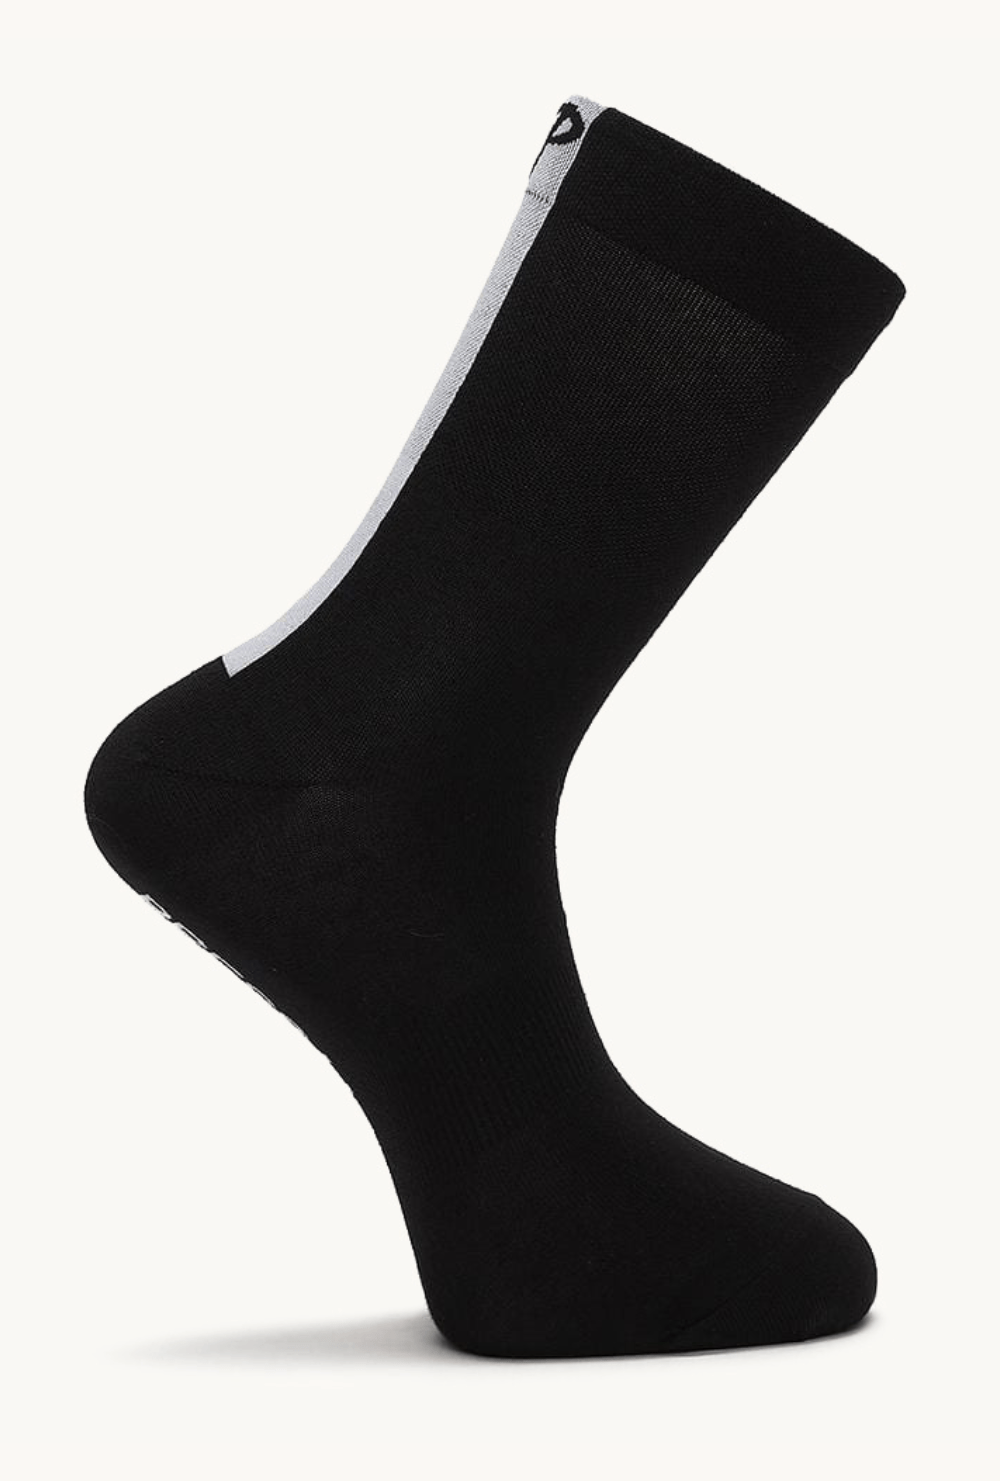 Pcs  Press Hard Here - Socks Black  Large / X-large / Black